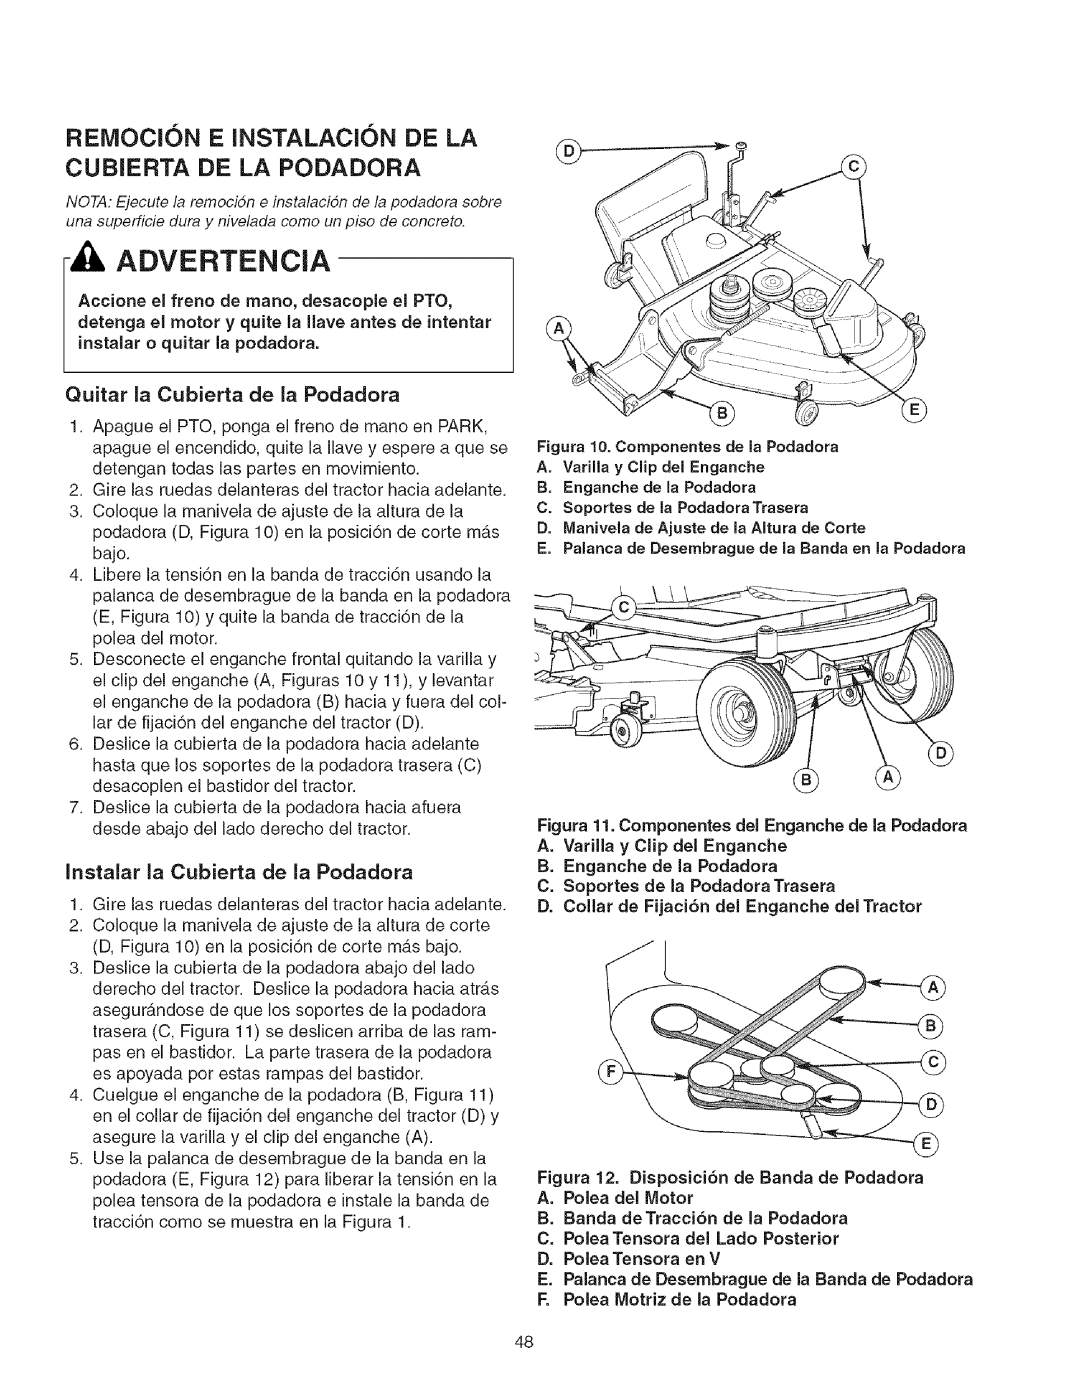 Craftsman 107.2777 Remocion E Instalacion De La, Cubierta De La Podadora, Advertencia, Quitar la Cubierta de la Podadora 